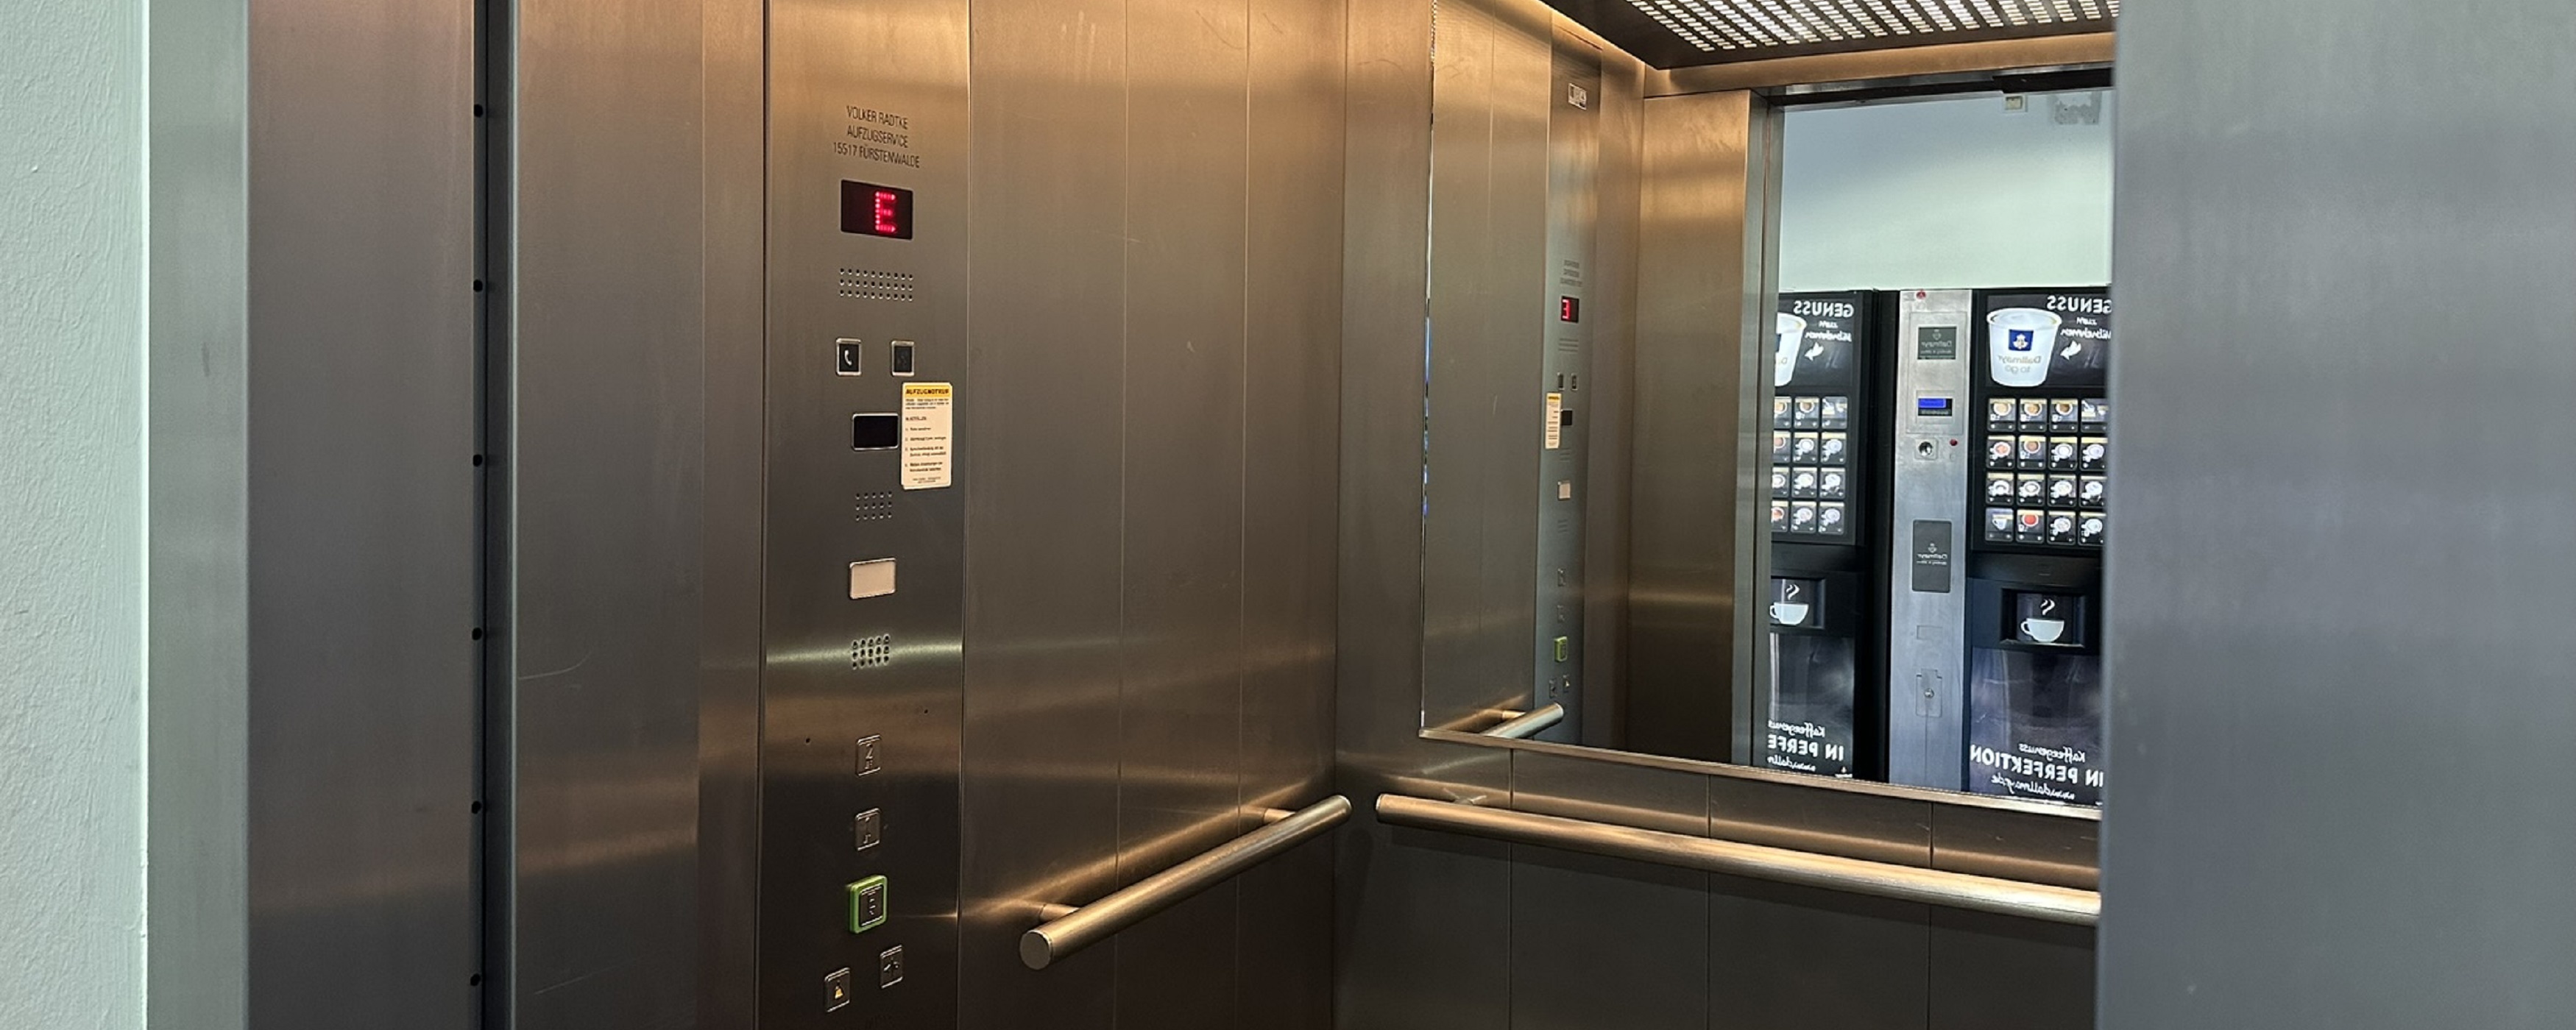 Bild: Einblick in den offenen Aufzug im Hörsaalgebäude